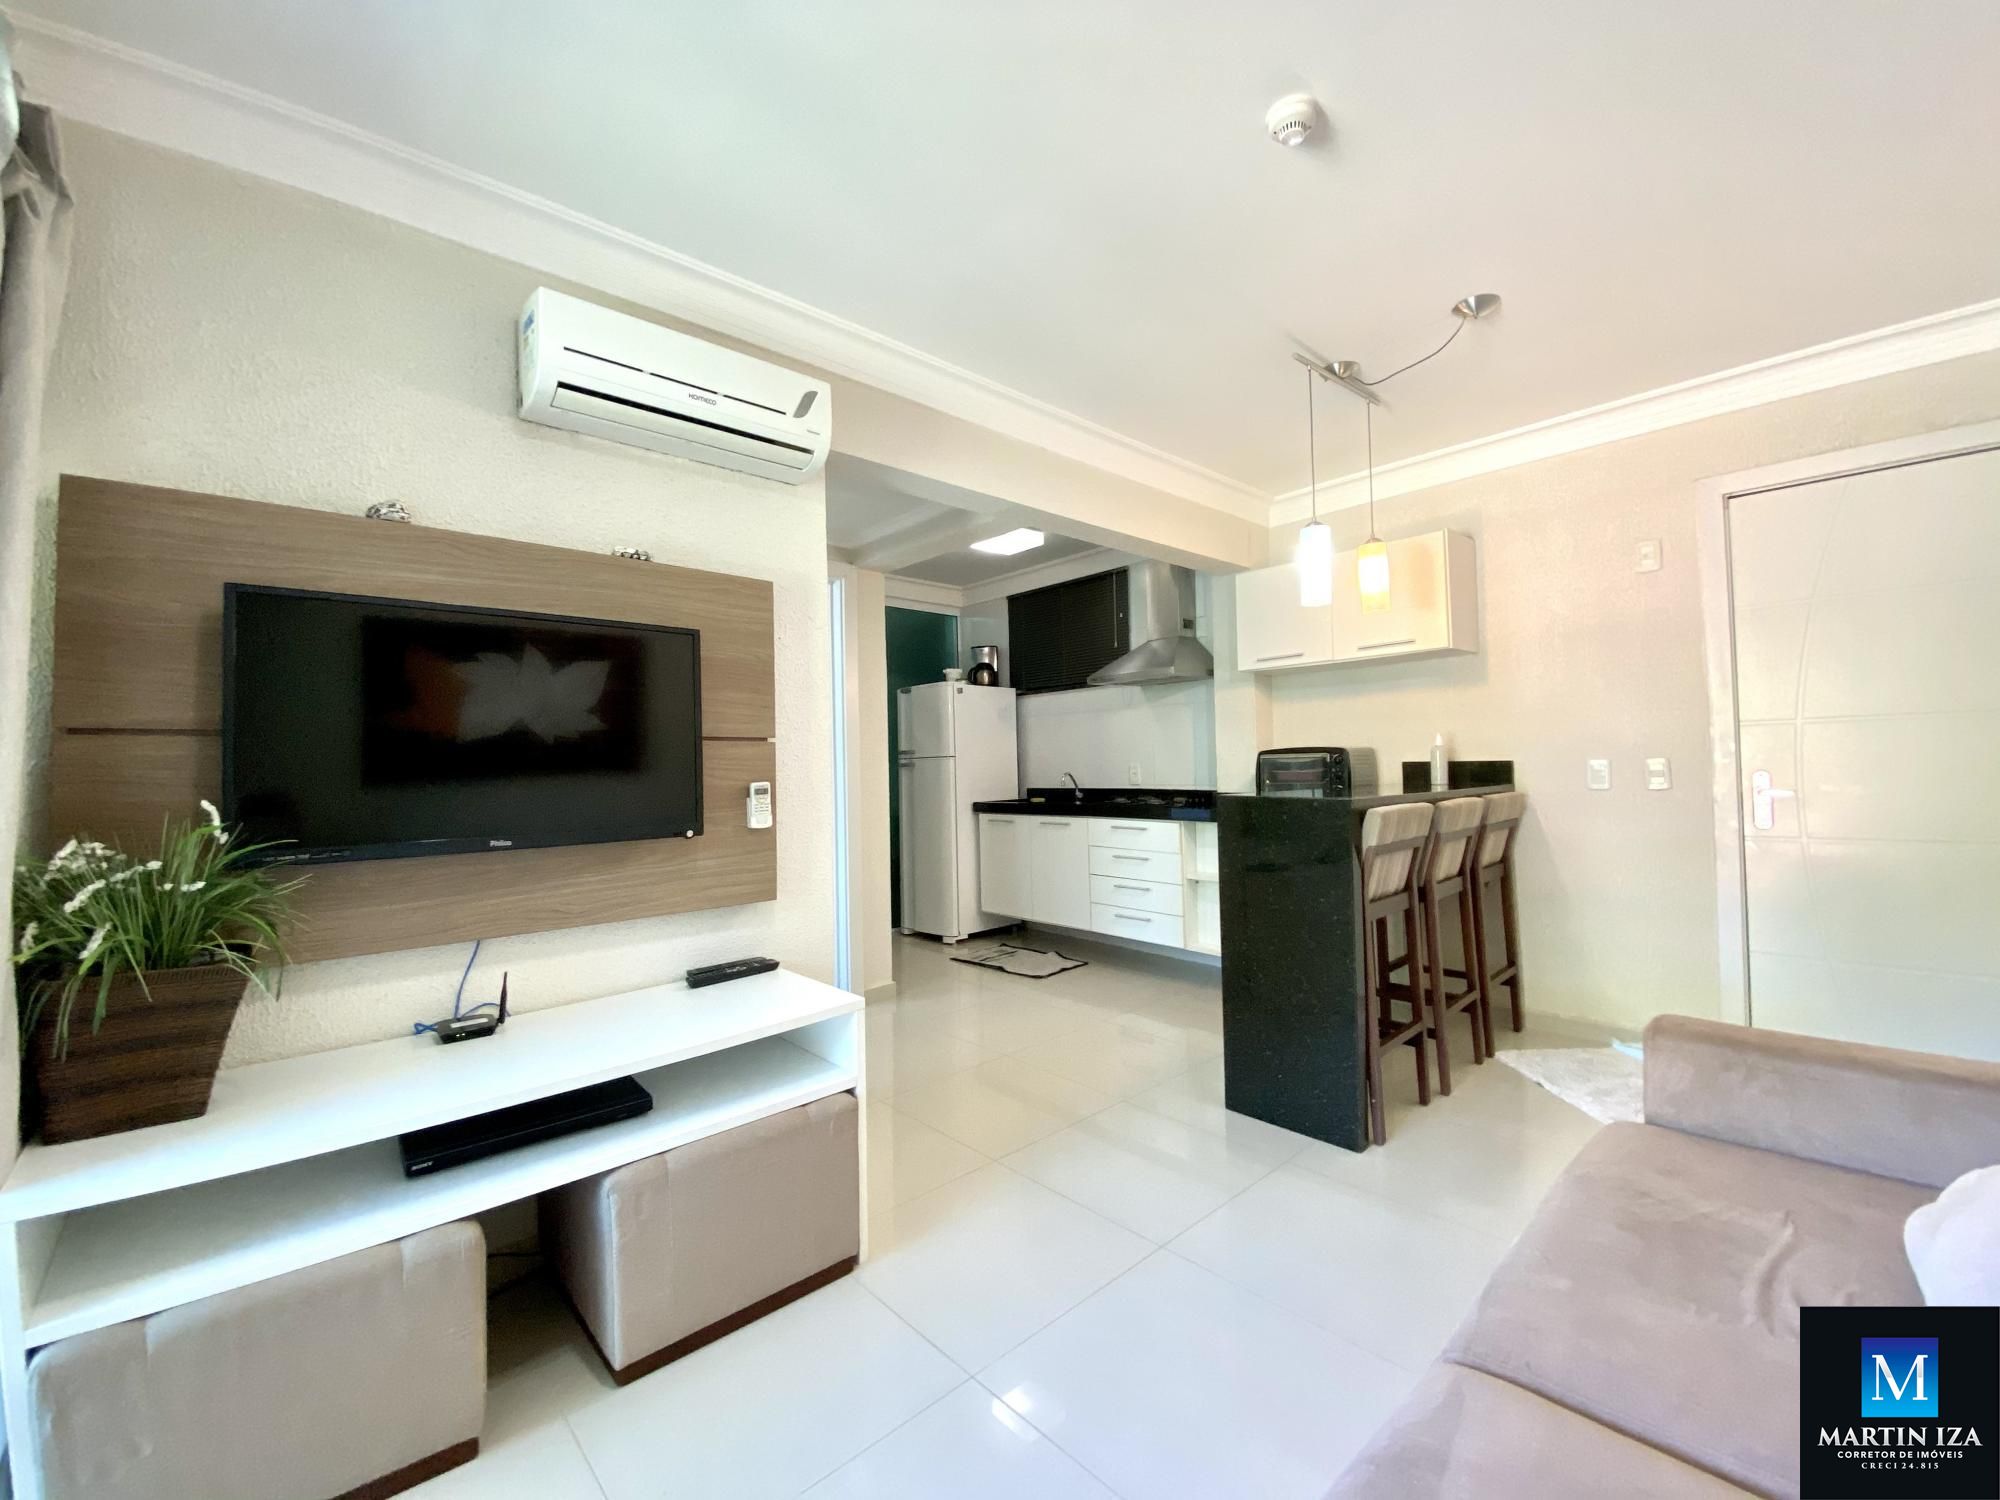 Apartamento com 1 Dormitórios para alugar, 44 m² por R$ 300,00